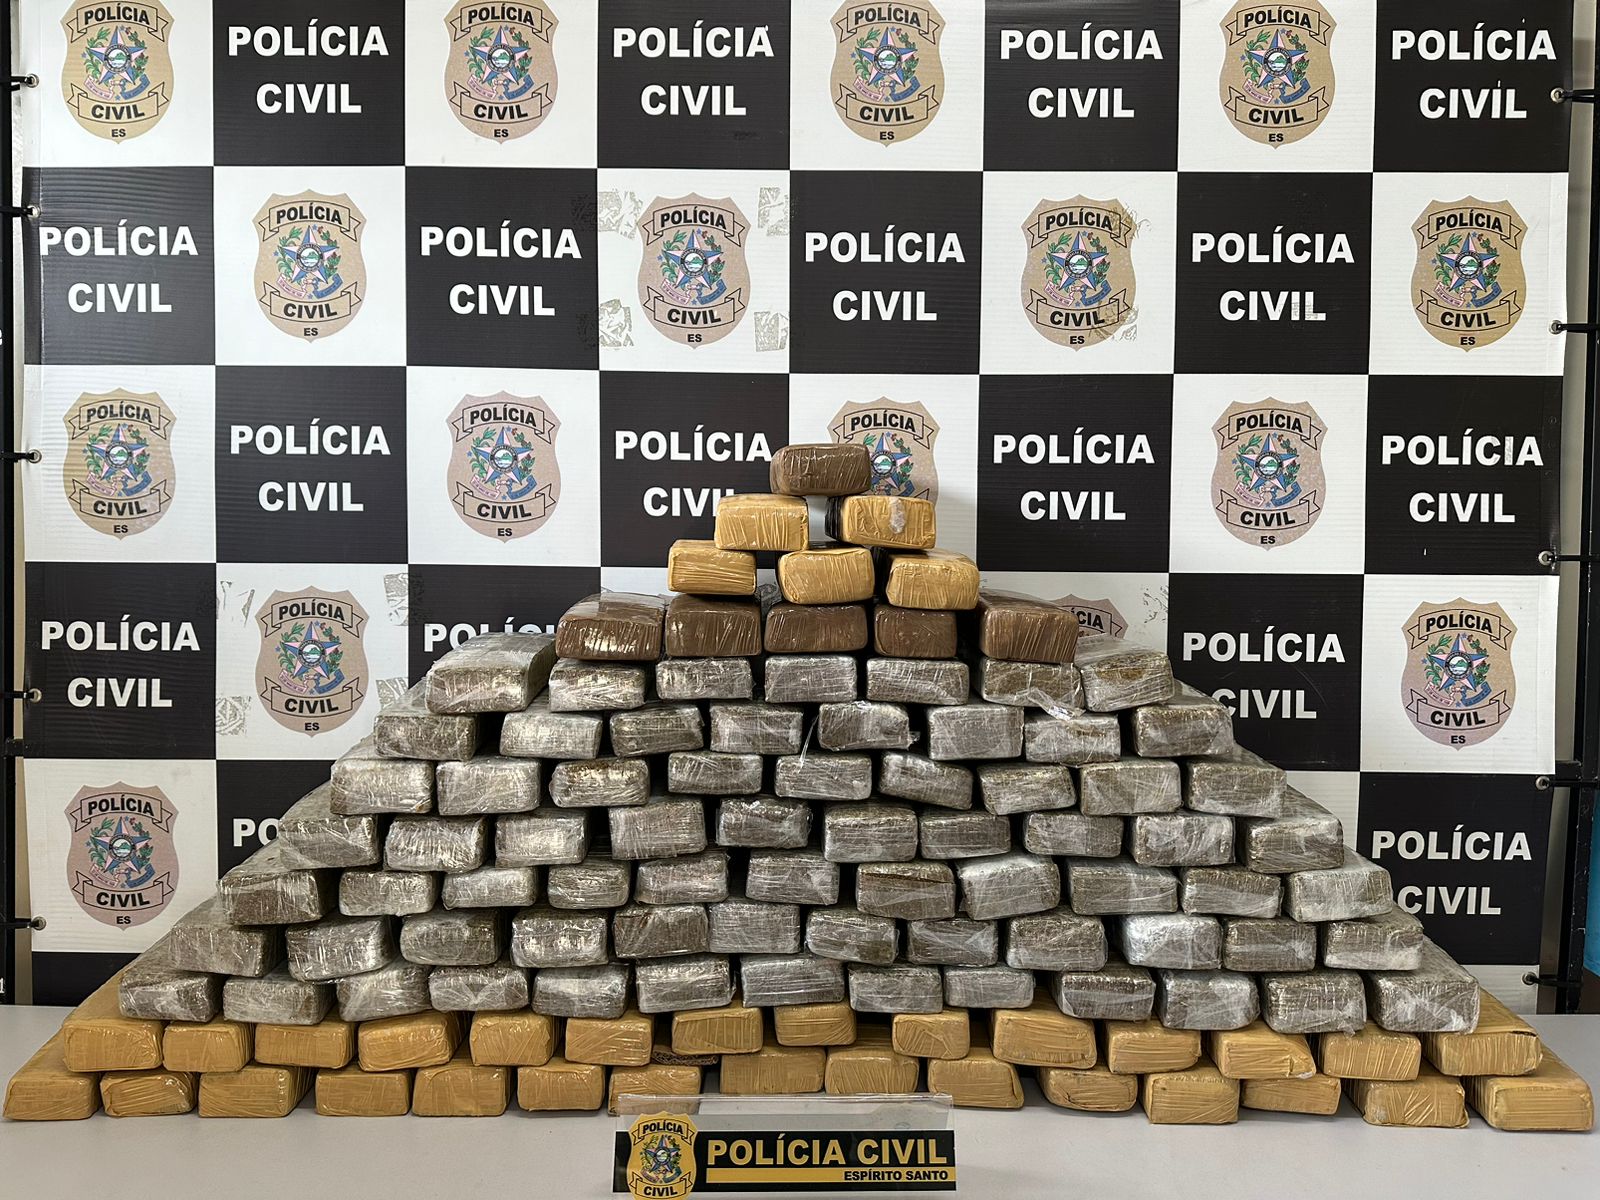 Policiais encontraram 110 tabletes de maconha, na tarde desta terça-feira (5), em residência que servia para armazenamento de drogas, segundo denúncias à Polícia Civil